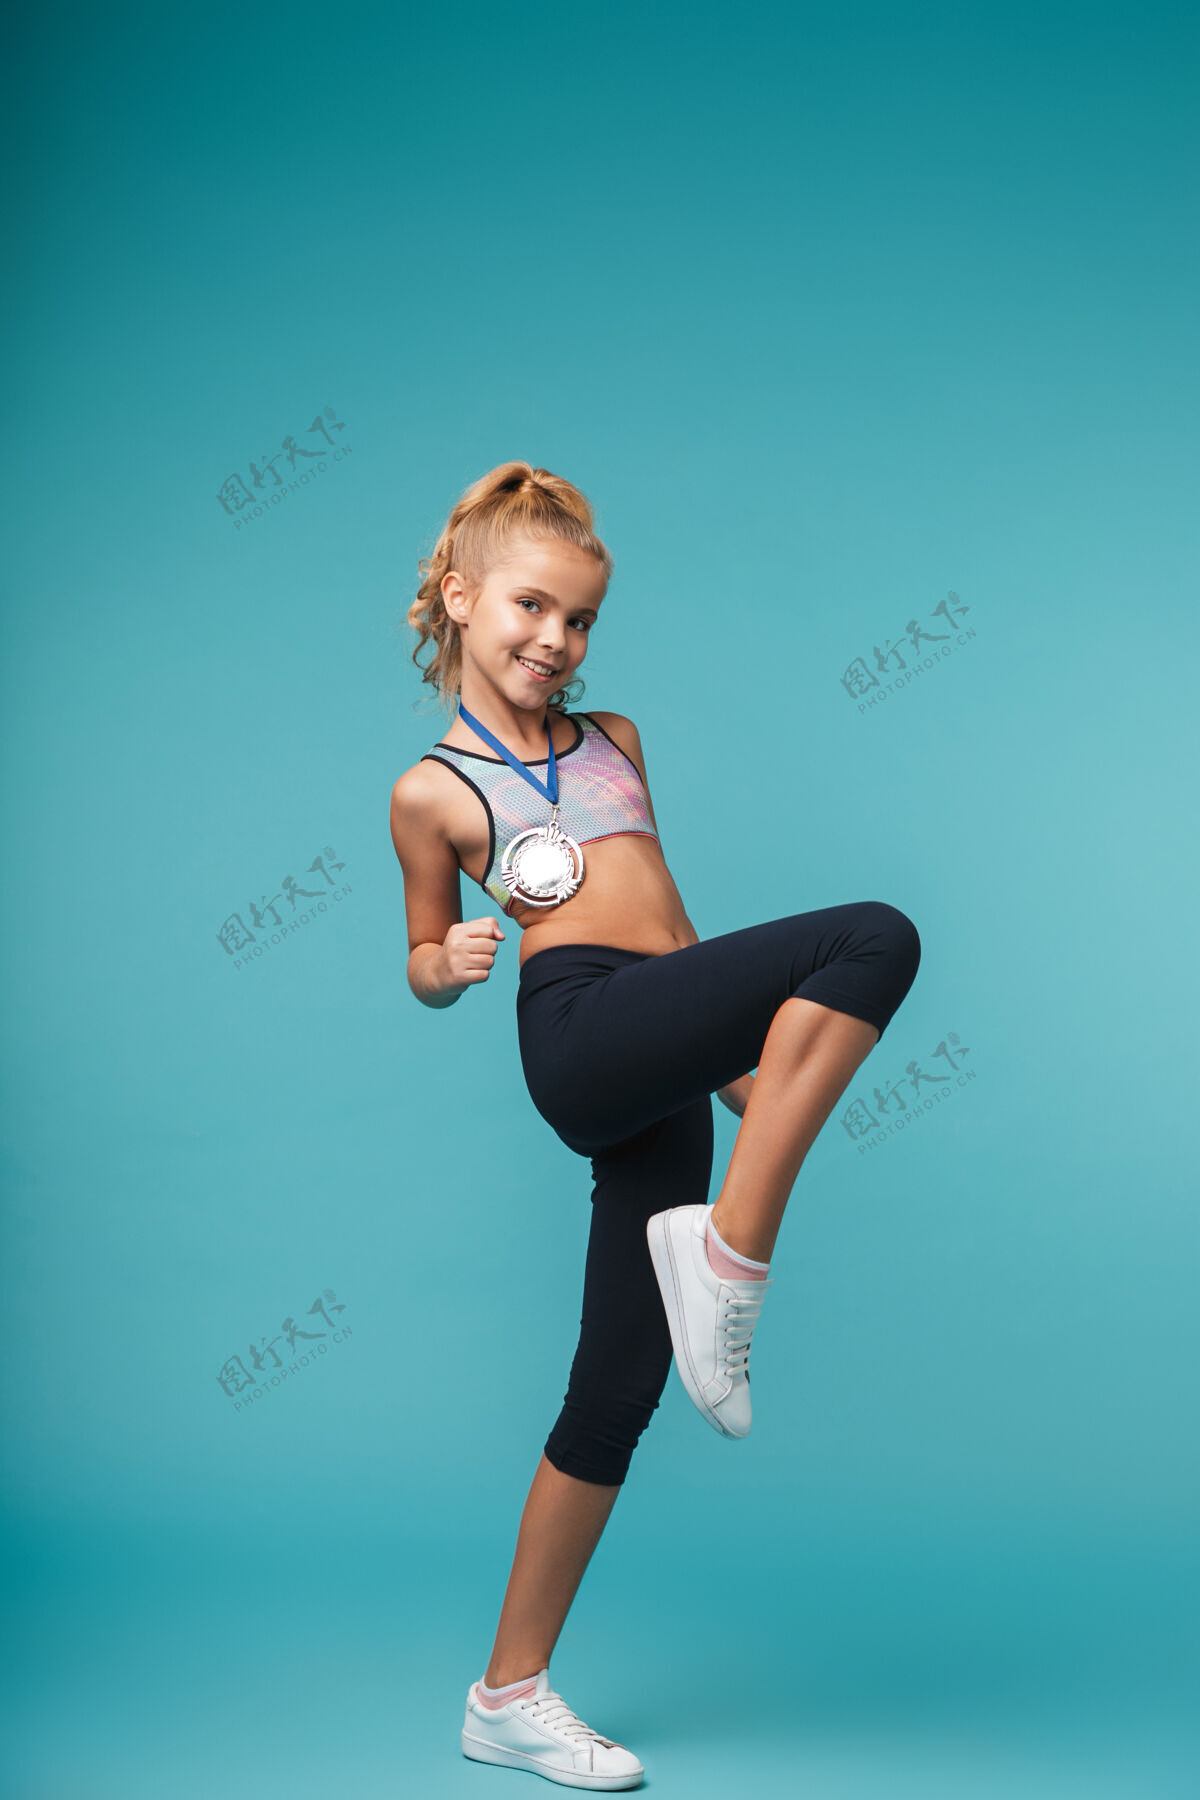 小一个可爱的小女孩拿着奖牌在蓝色的墙上摆出获奖者的姿势高加索表情锻炼